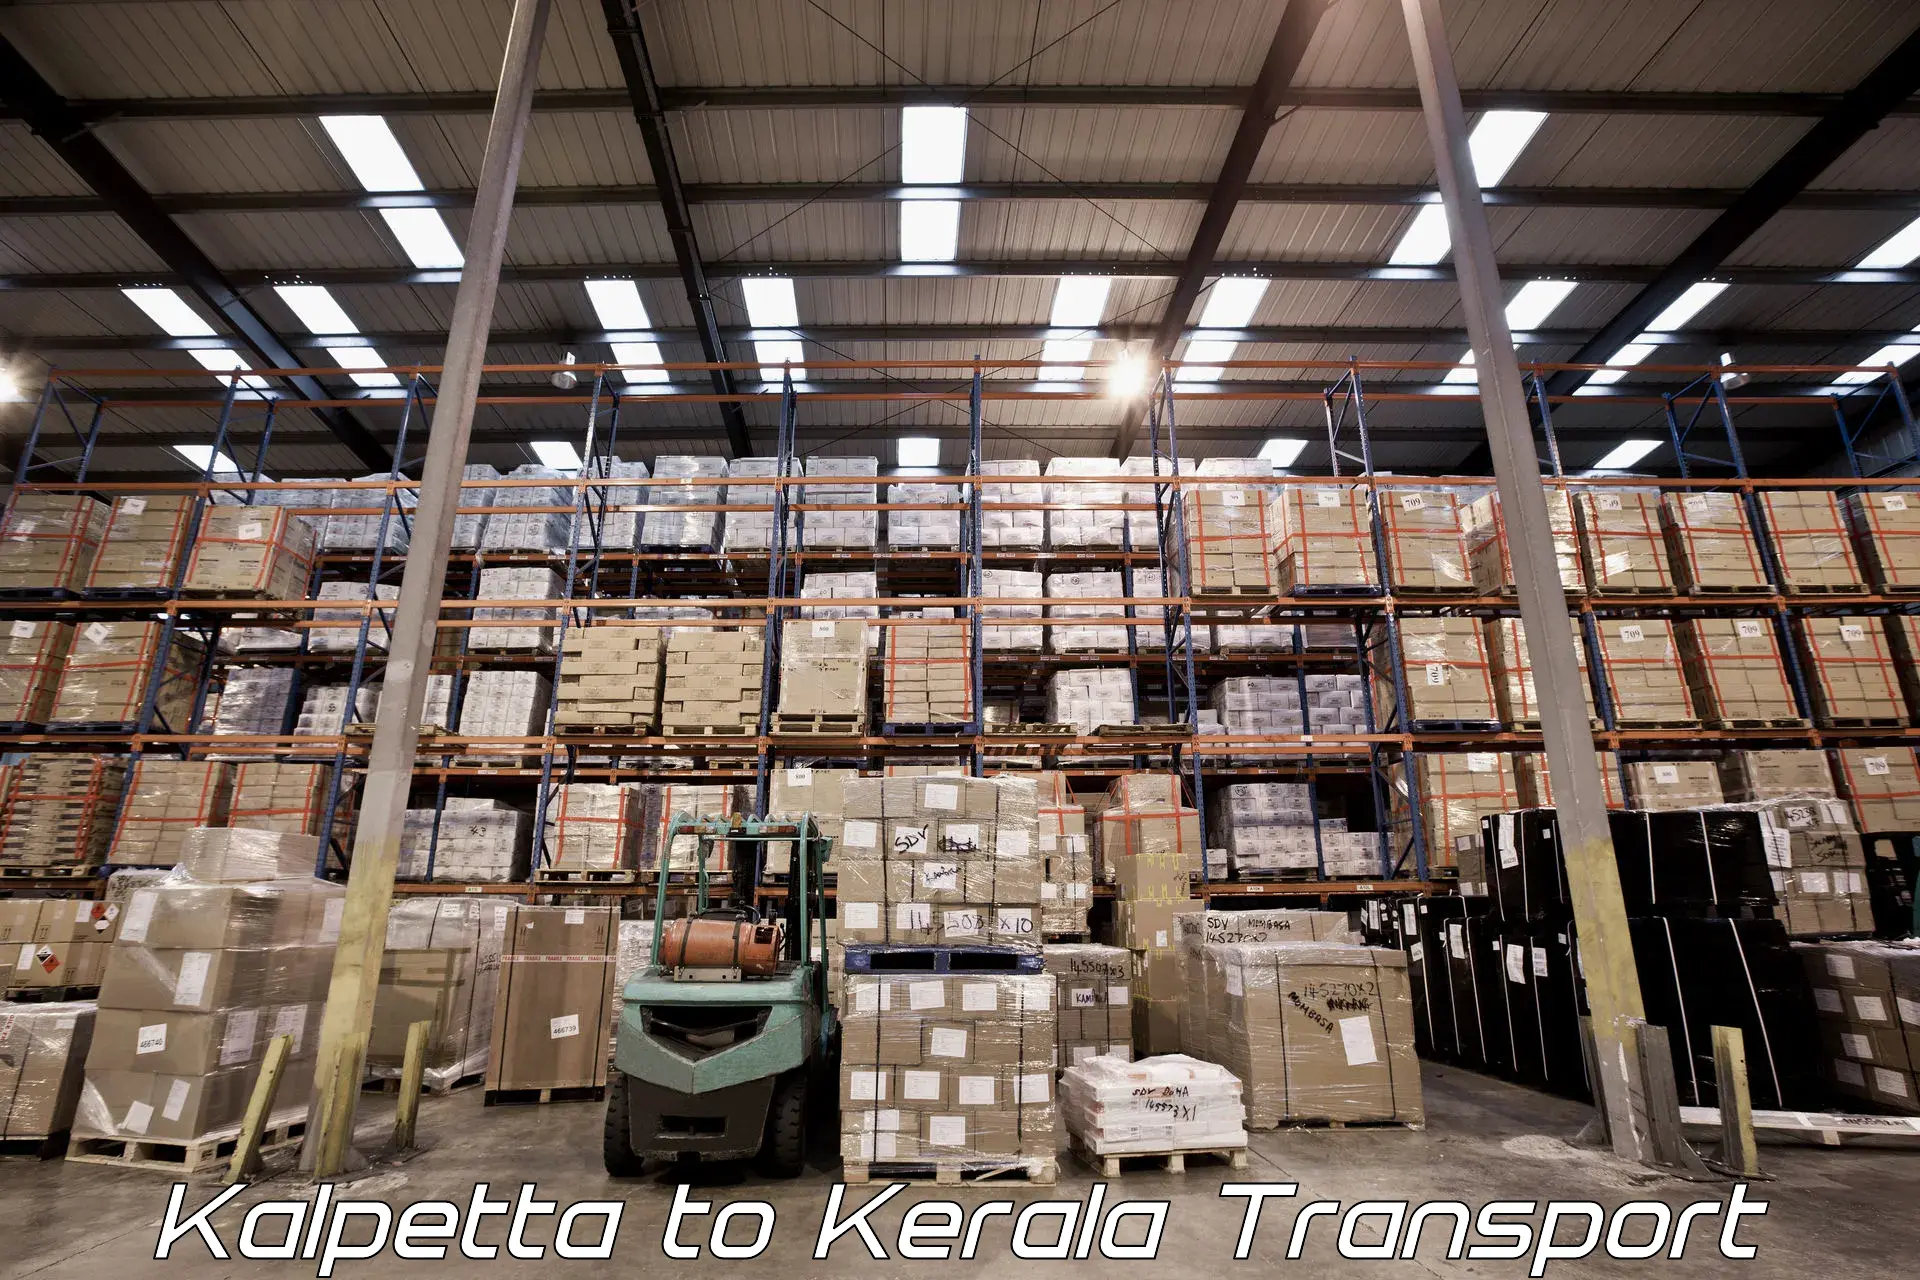 Online transport booking Kalpetta to Chervathur